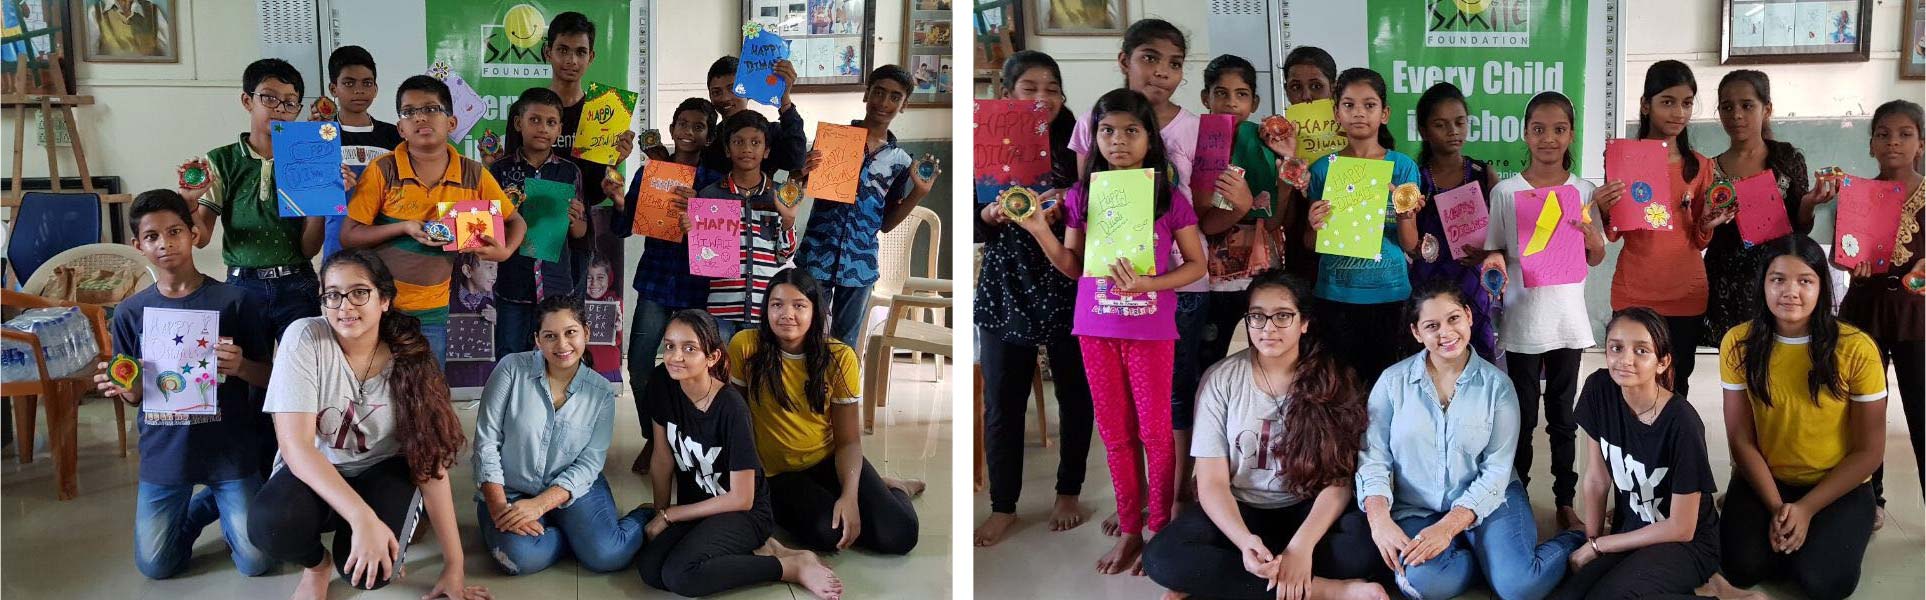 CFC Goodwill Ambassador Ms. Anushi Gundecha celebrates Diwali with Smile Foundation kids